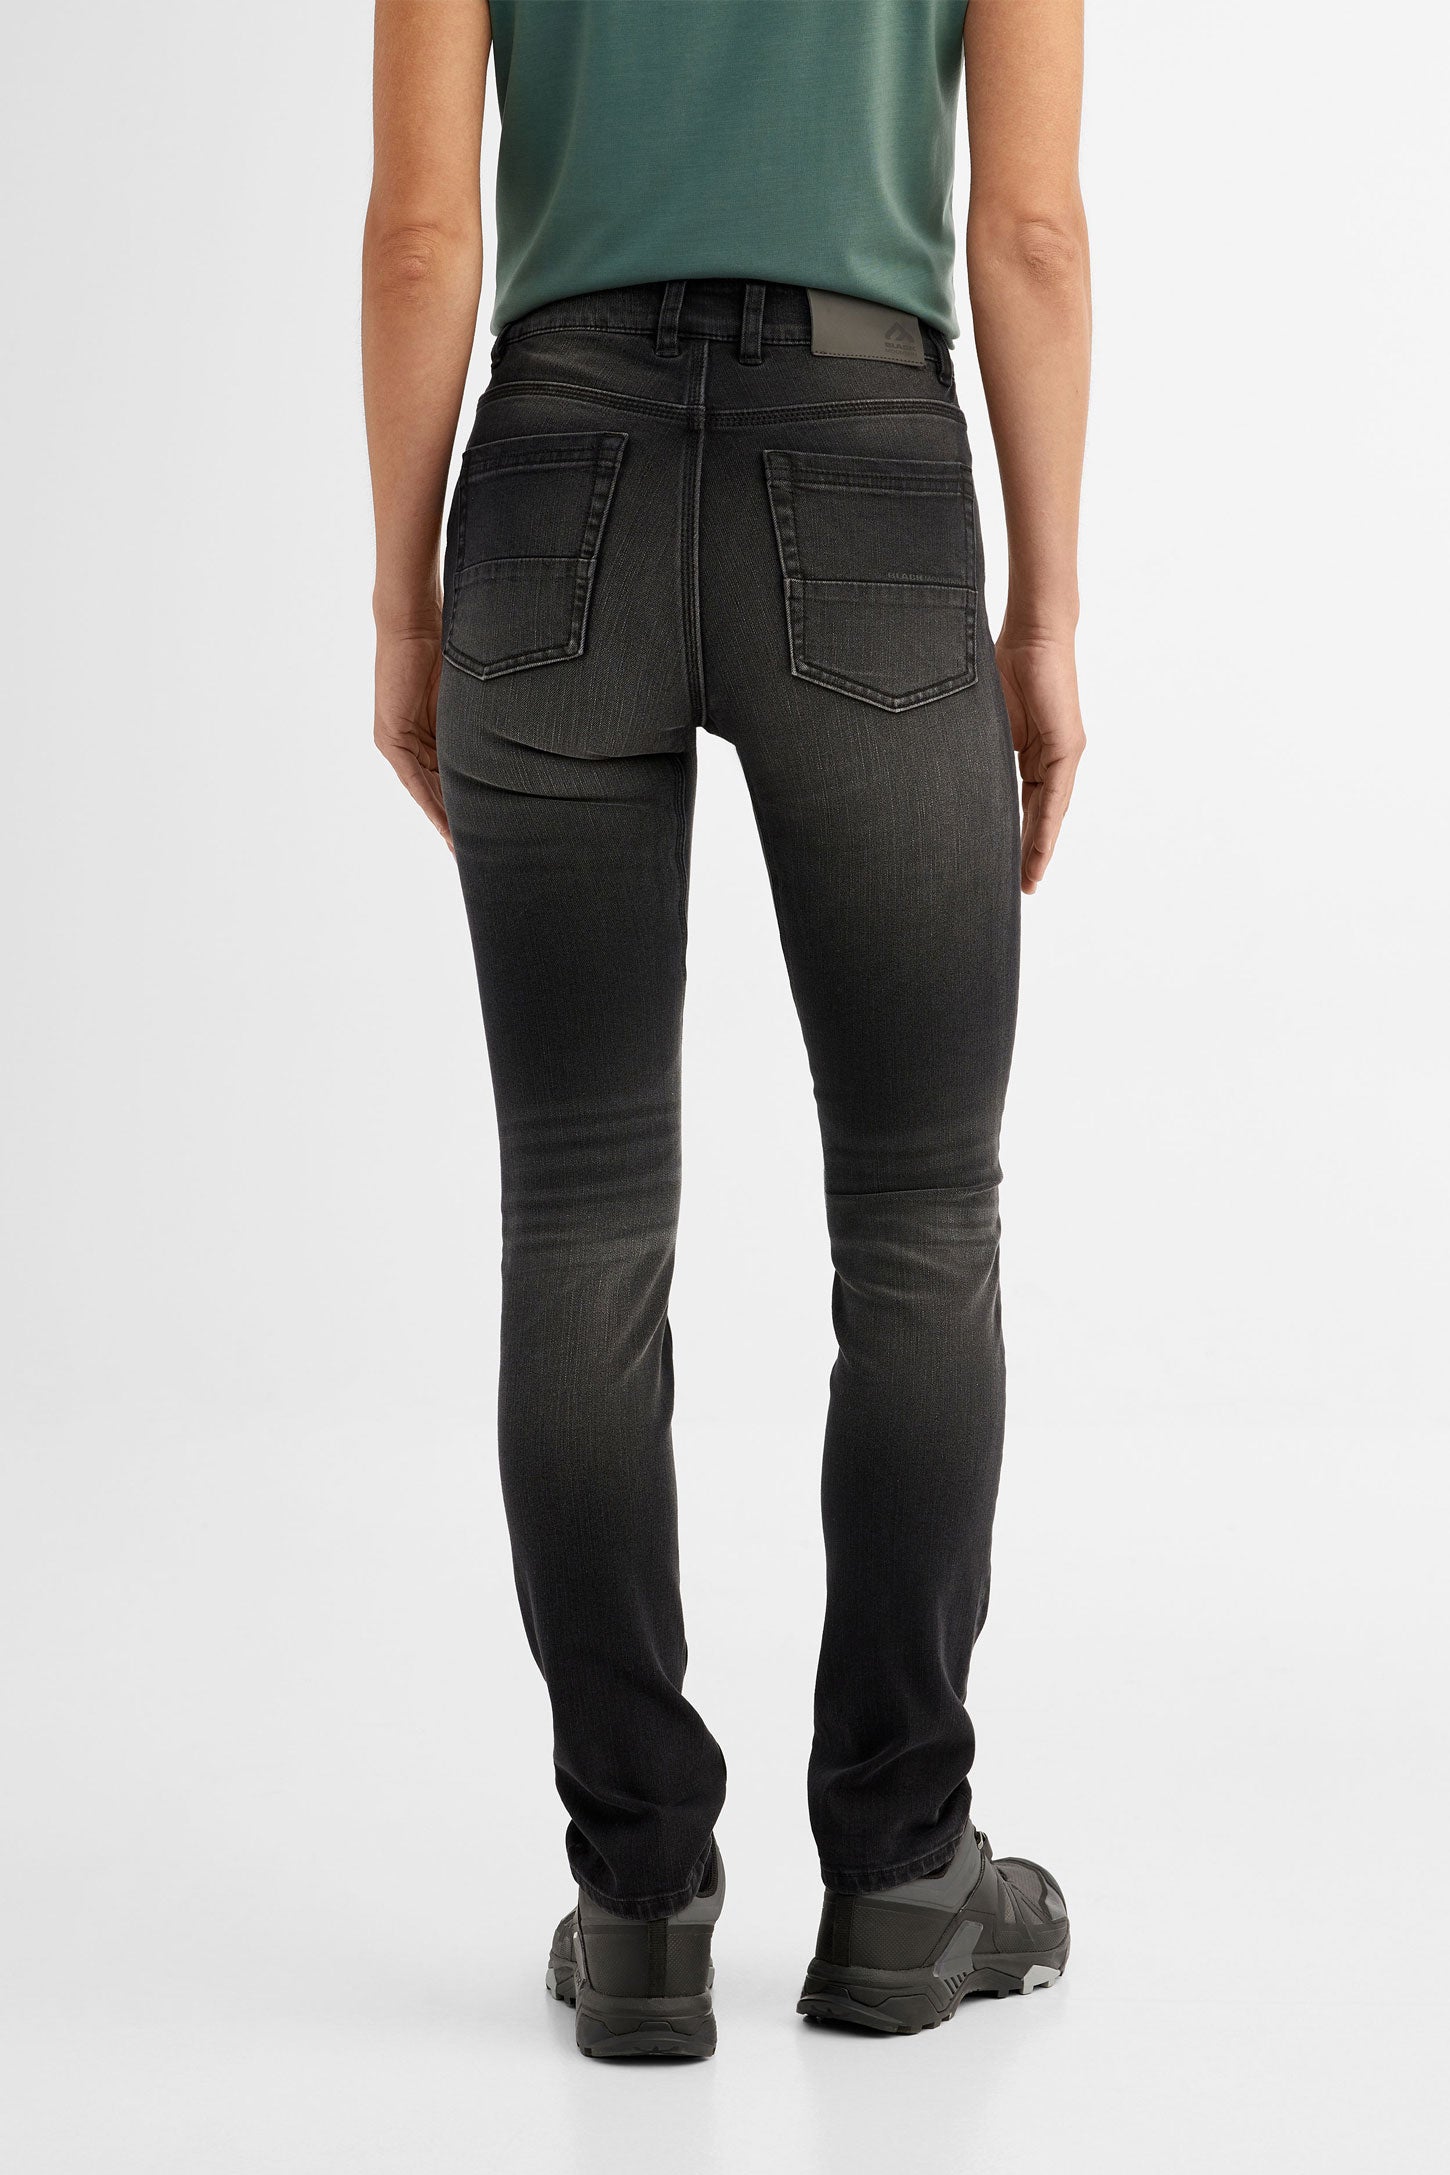 Jeans extensible 4 sens BM - Femme && DENIM NOIR